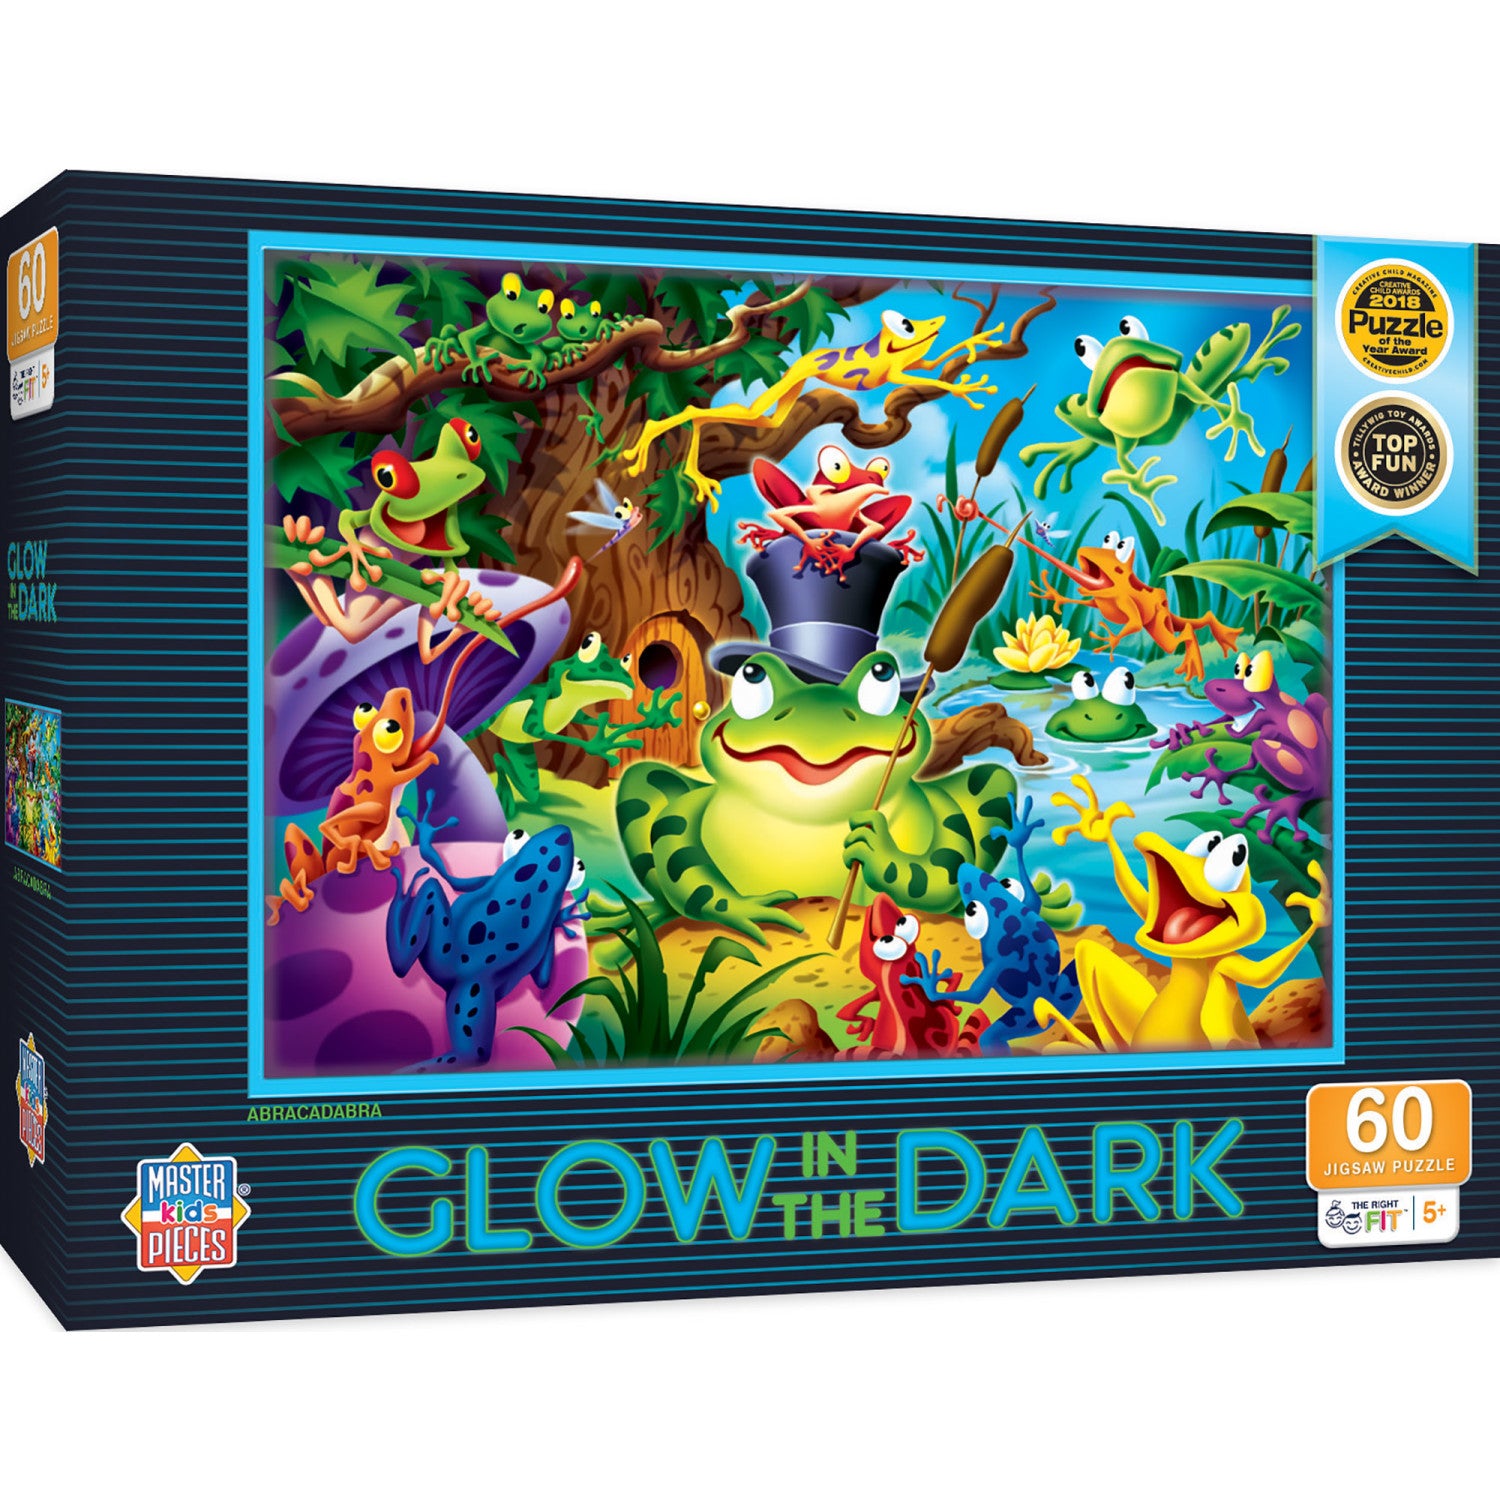 Glow in the Dark - Abracadabra 60 Piece Puzzle